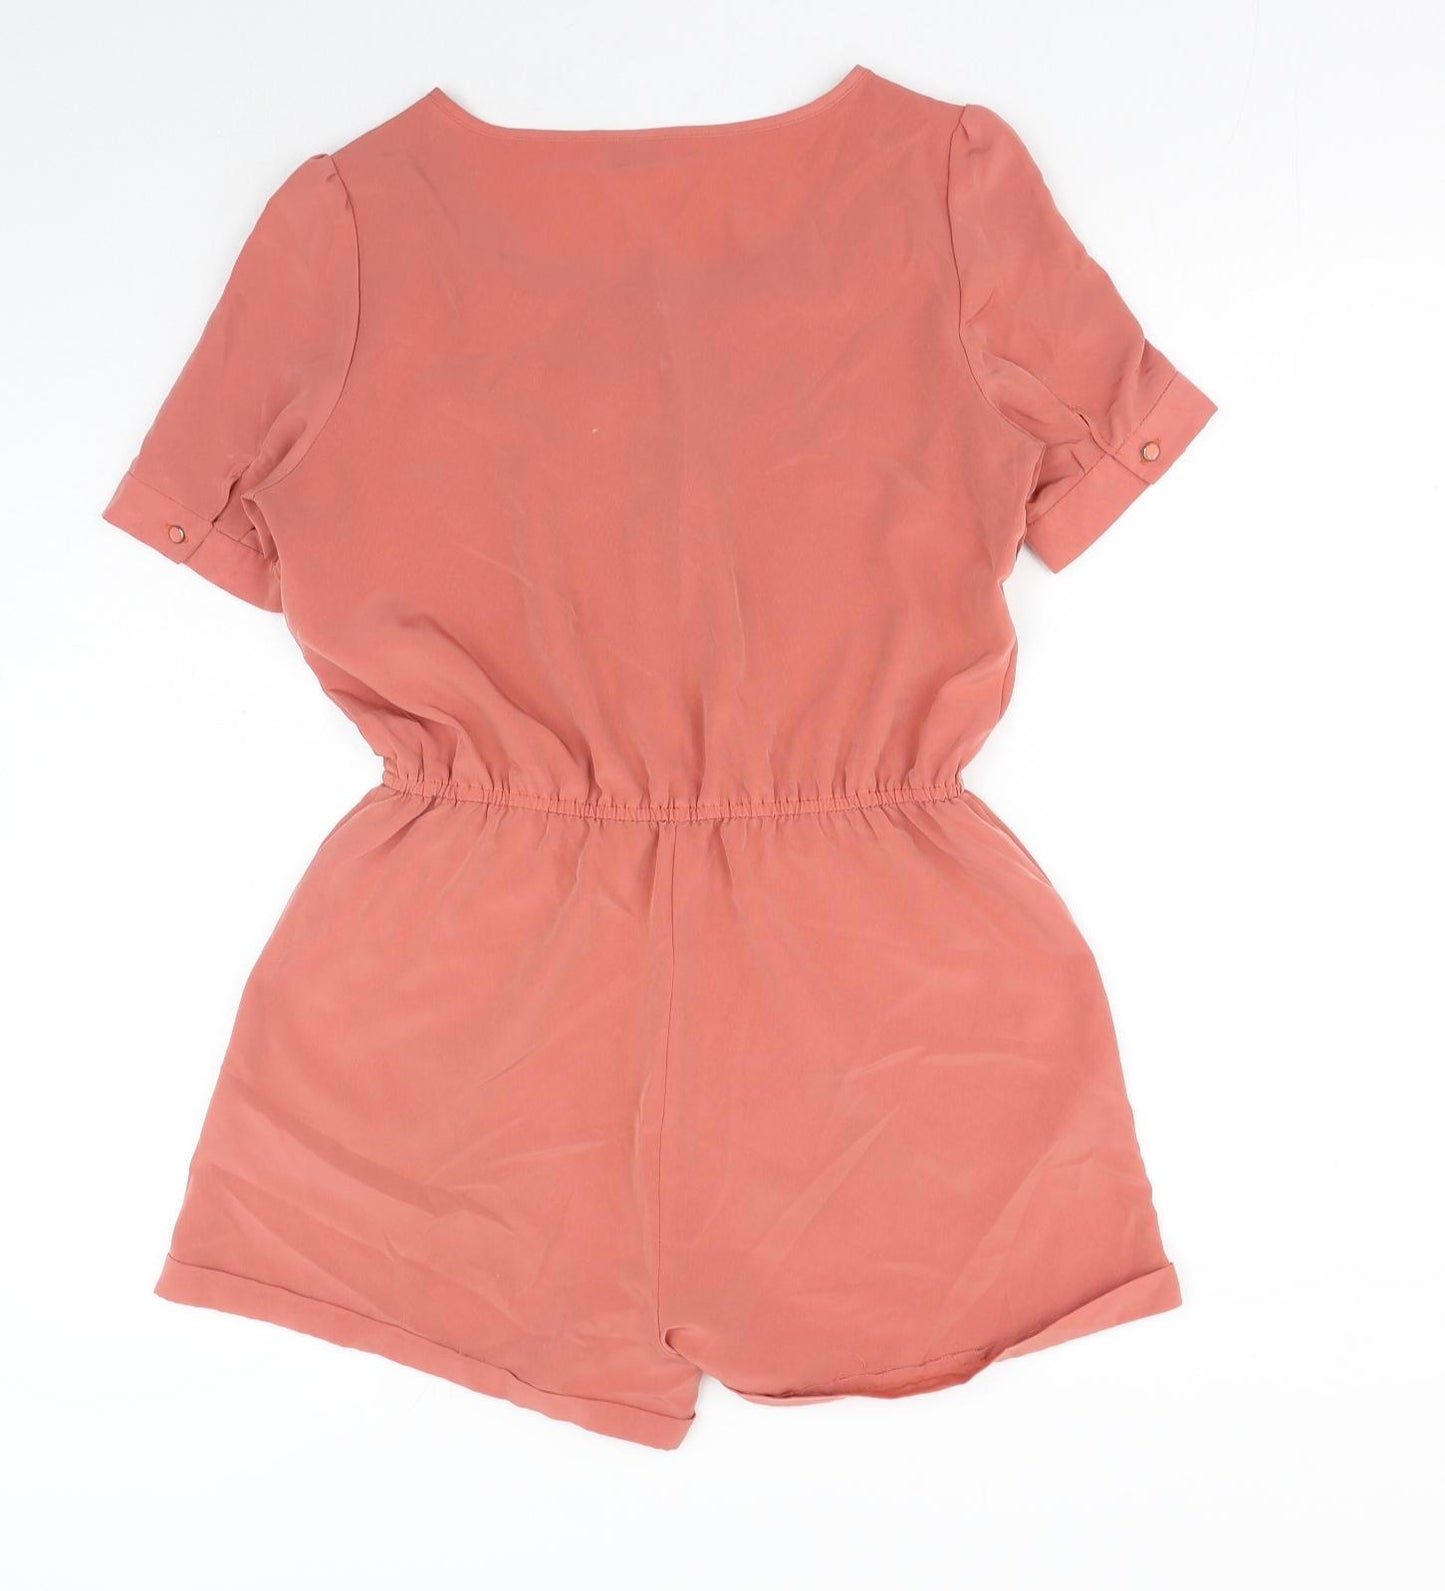 Sparkle & Fade Womens Orange Cotton Playsuit One-Piece Size M Button